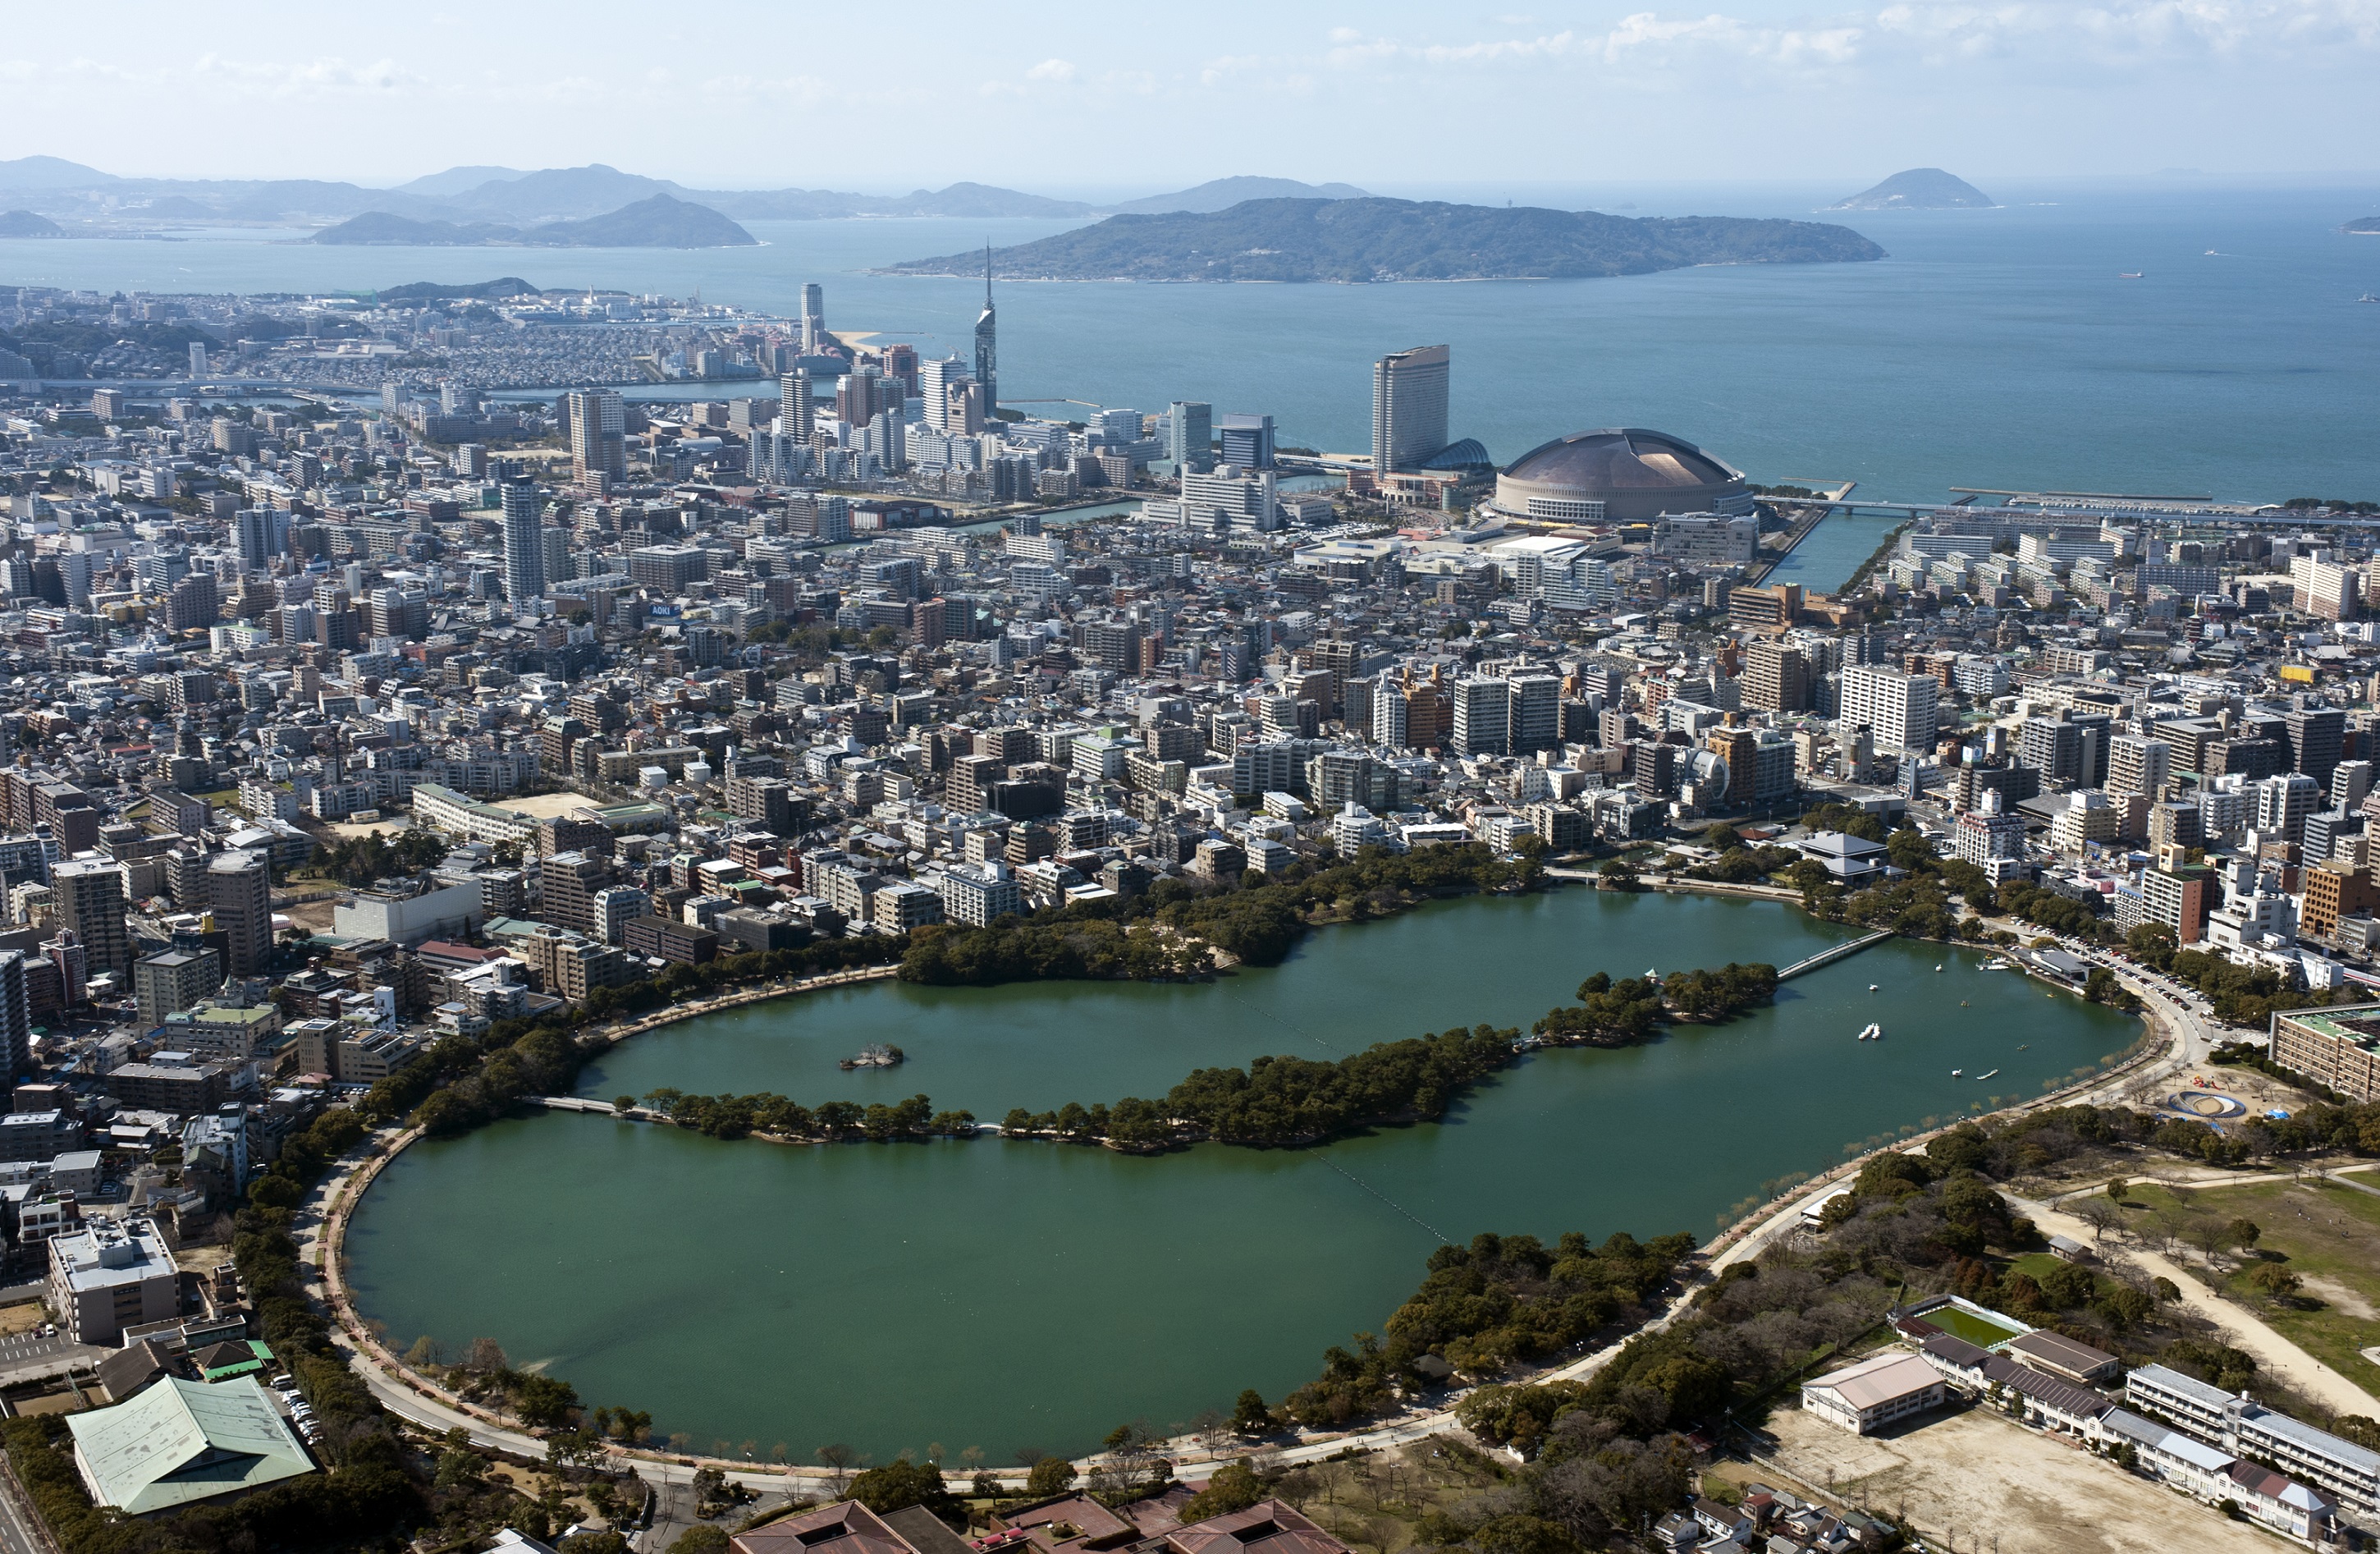 大濠公園上空から博多湾を望む(2015)の画像